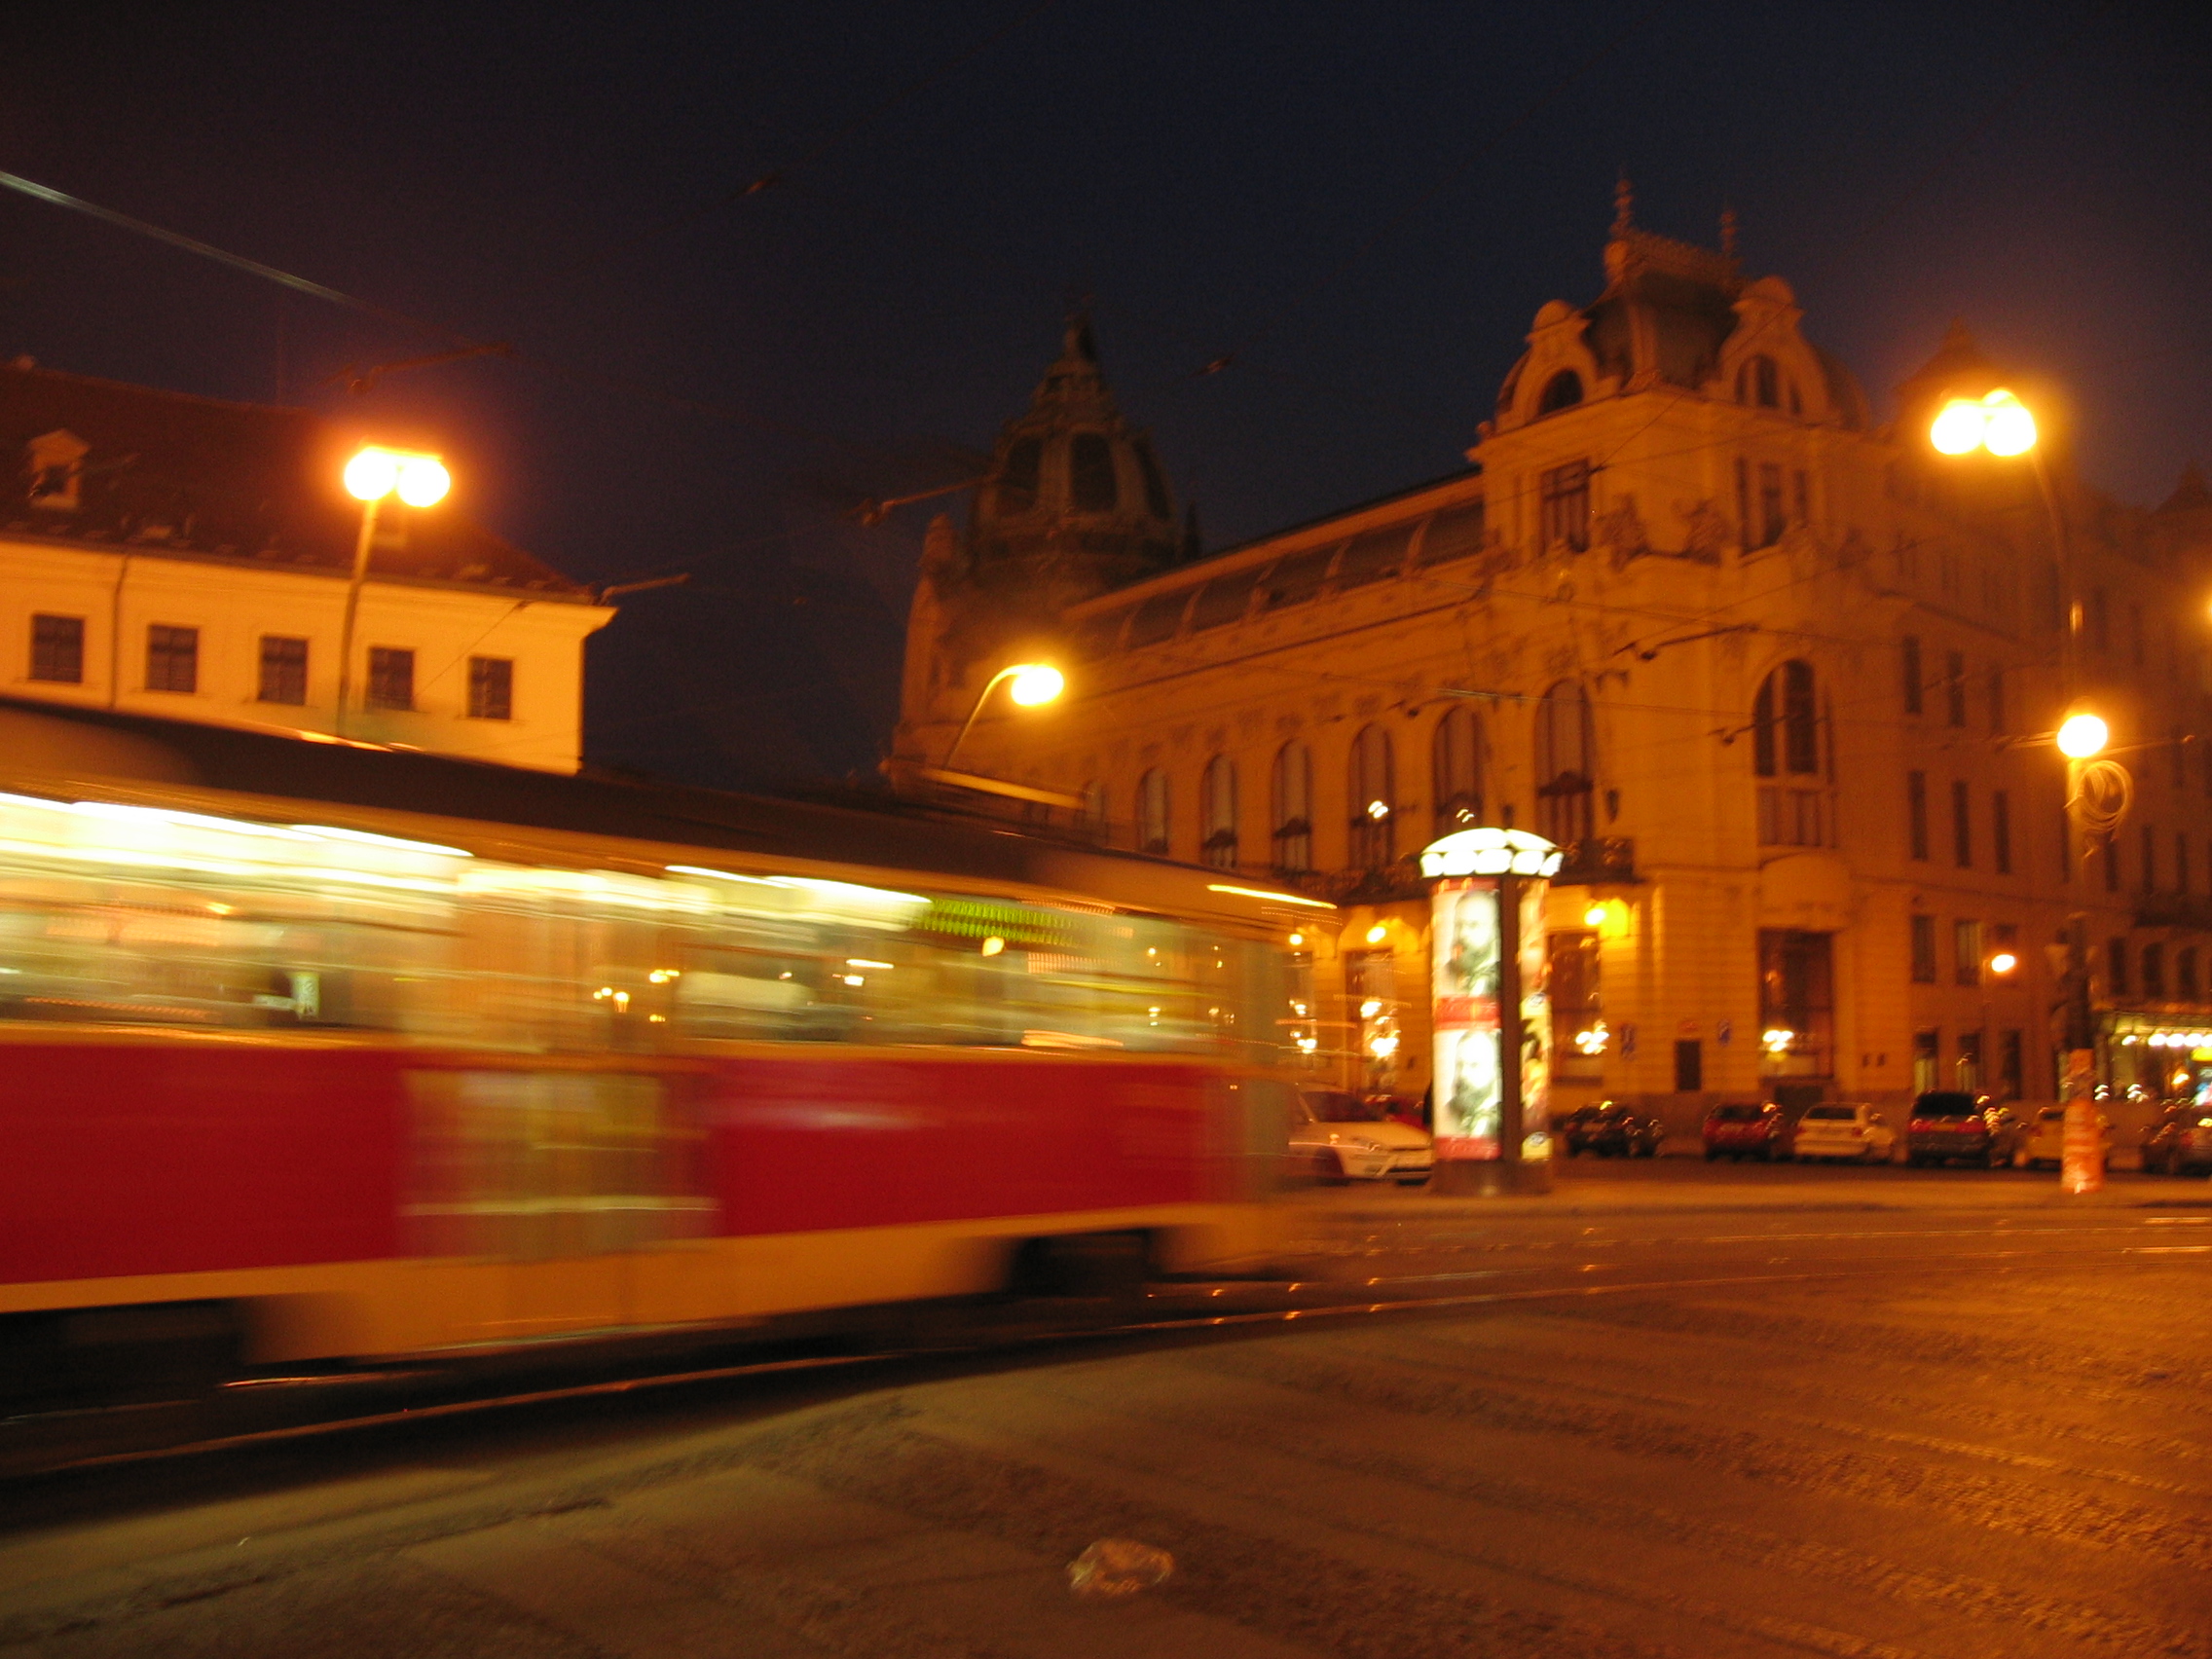 Praga, 2004. Tranvía